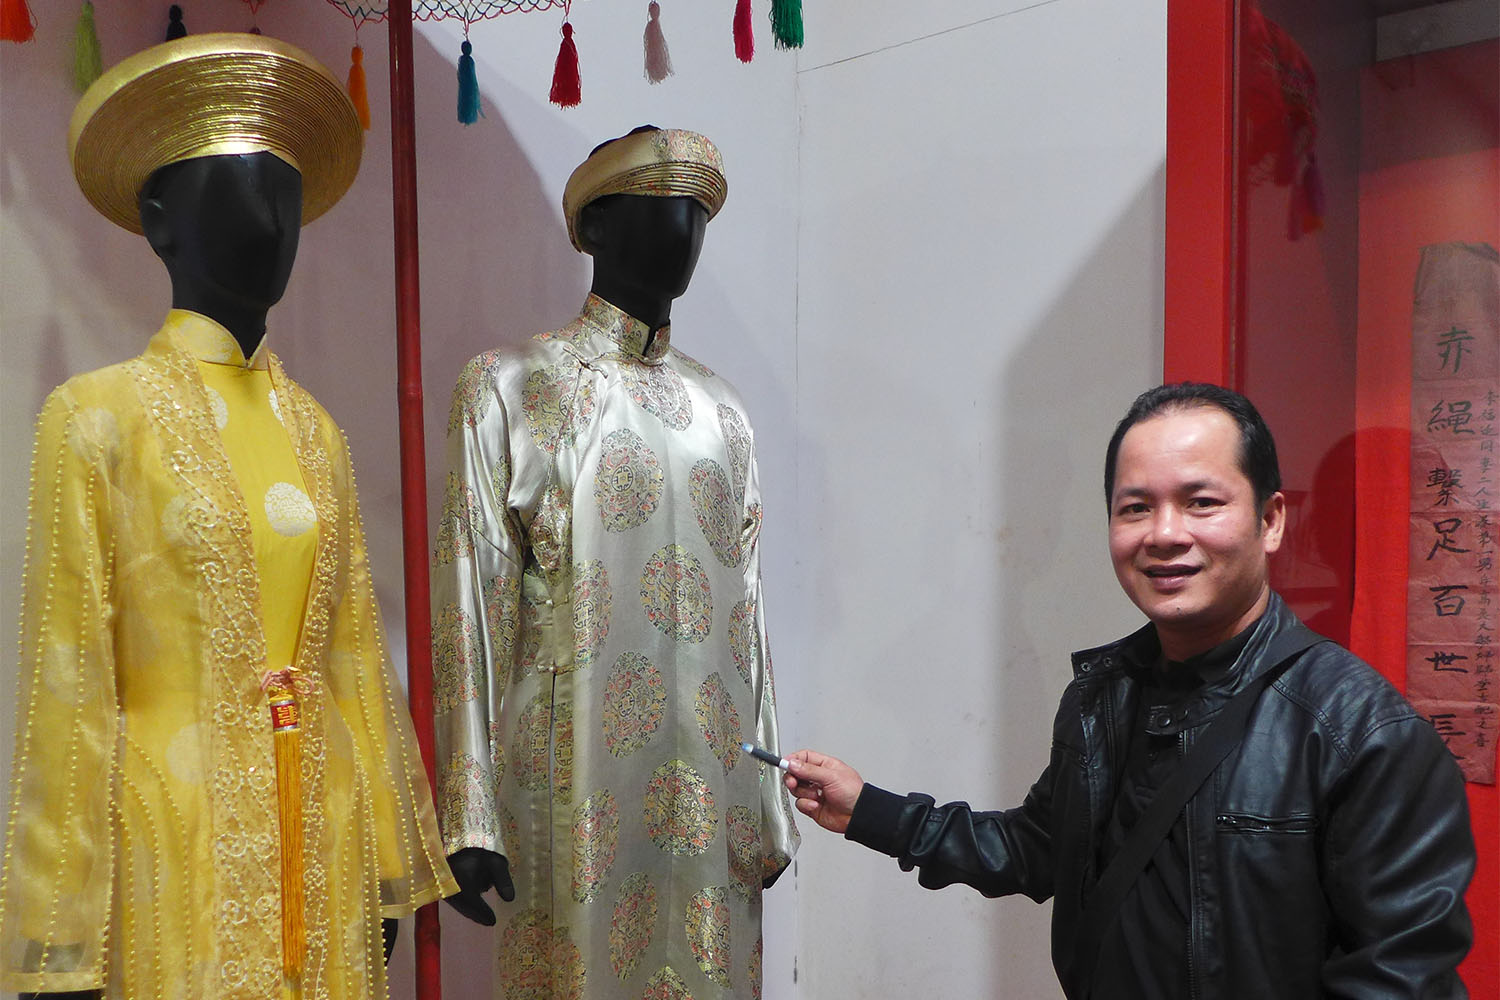 Tuyen, notre guide, nous montre des tenues traditionnelles au musée de la femme, à Hanoi.